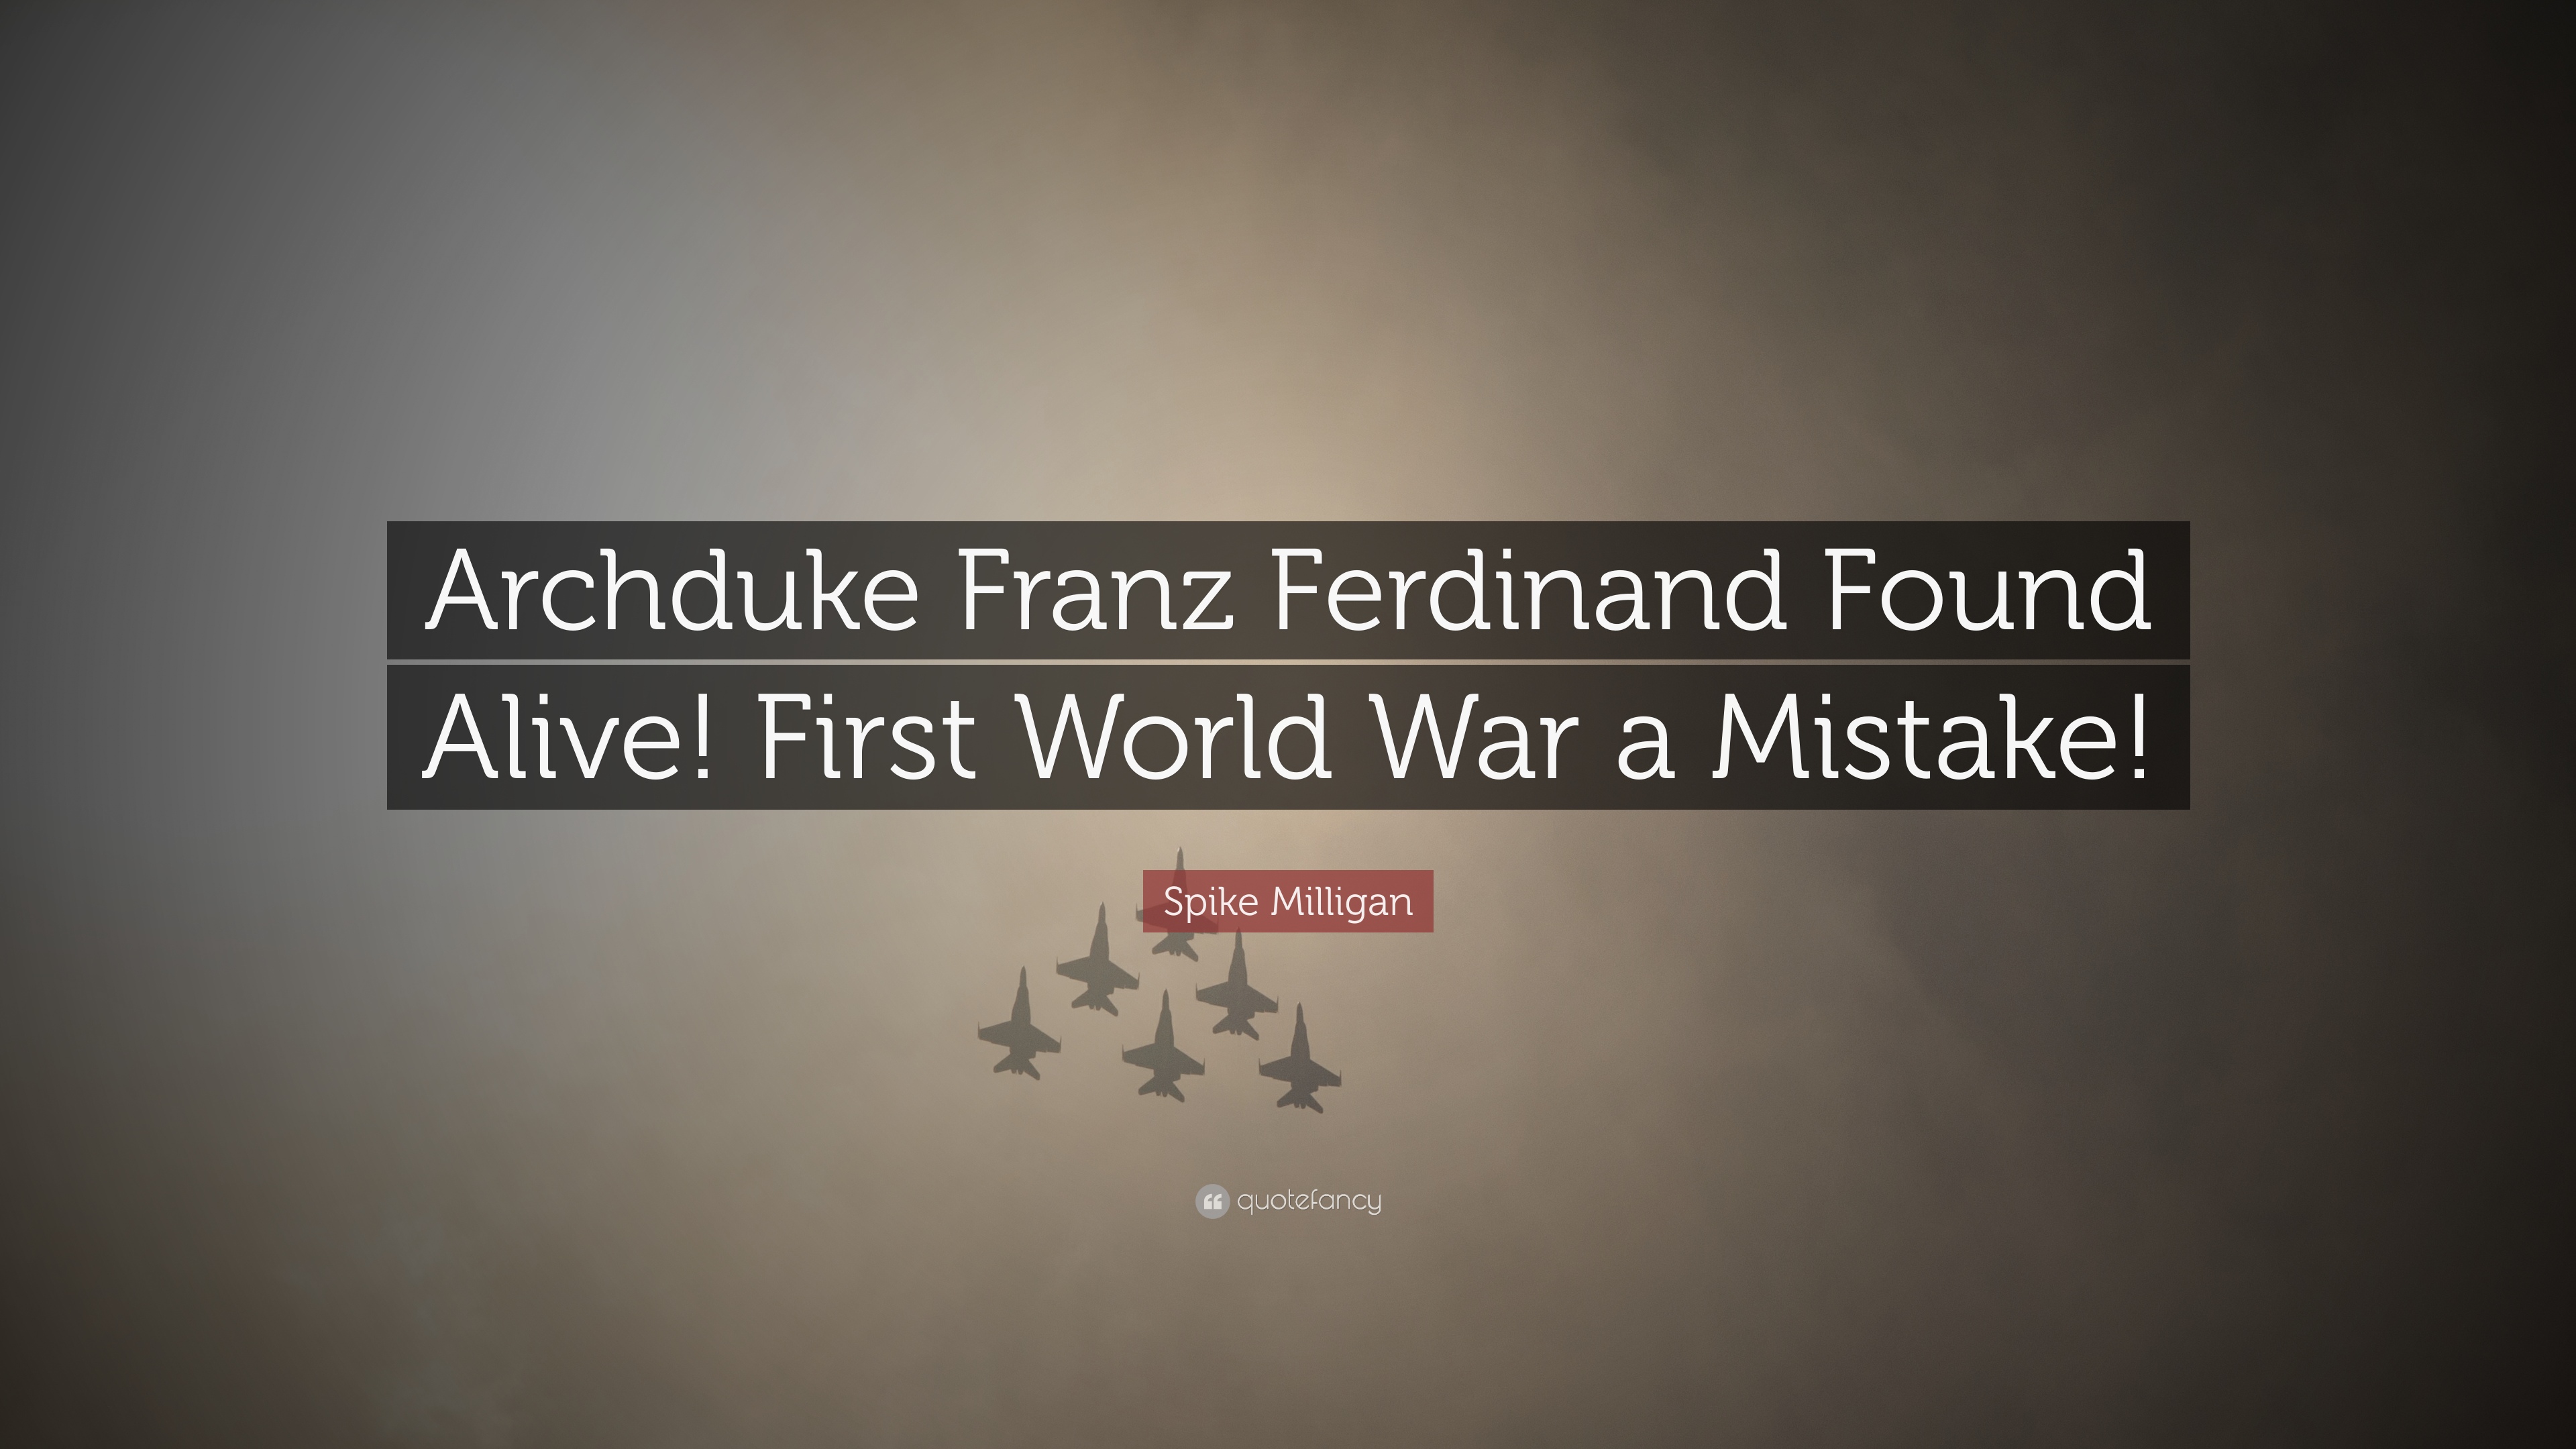 Spike Milligan Quote: “Archduke Franz Ferdinand Found Alive! First